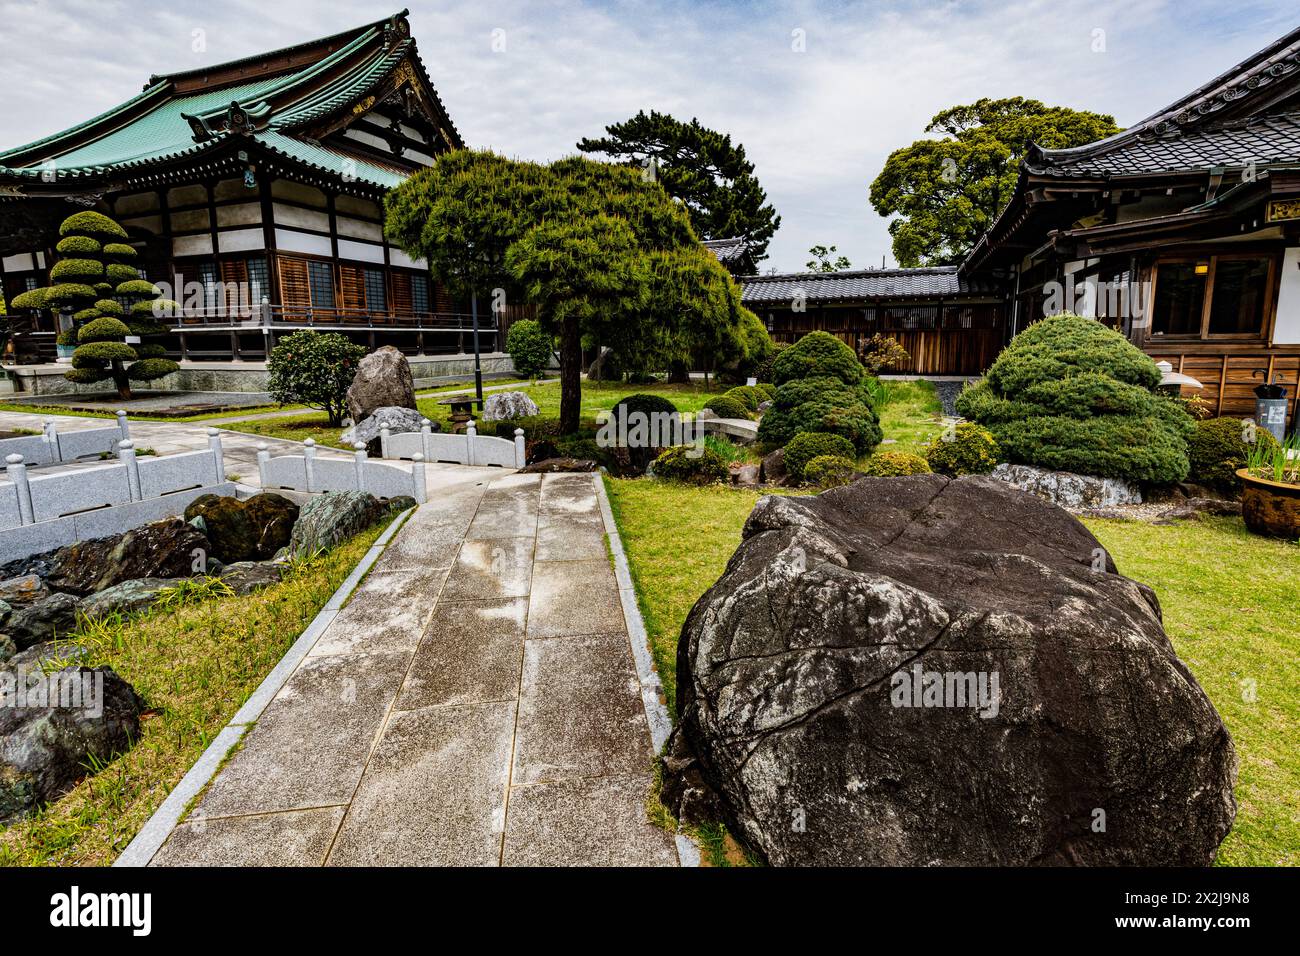 Gyotoku era famosa per la sua produzione di sale come Gyotoku Salt Field durante il periodo Edo. Il tempio Tokuganji fu fondato in quest'area nel 1610 da Tokugawa Foto Stock